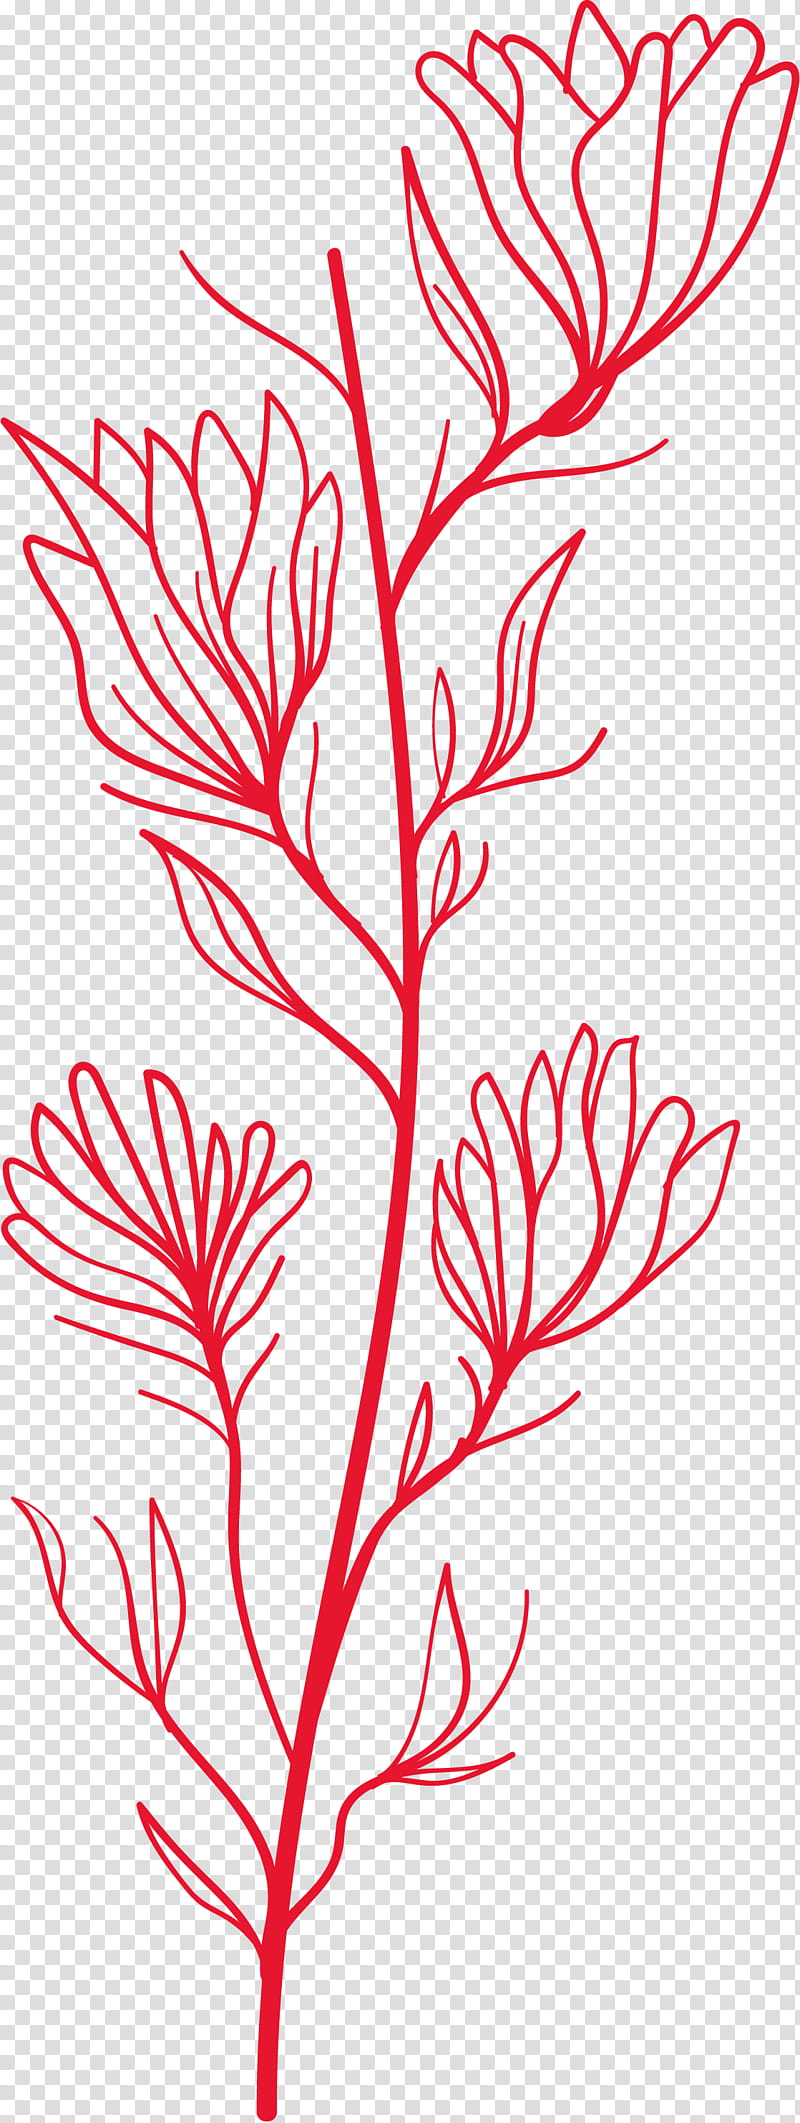 simple leaf simple leaf drawing simple leaf outline, Twig, Plant Stem, Line Art, Floral Design, Petal, Black White M, Meter transparent background PNG clipart